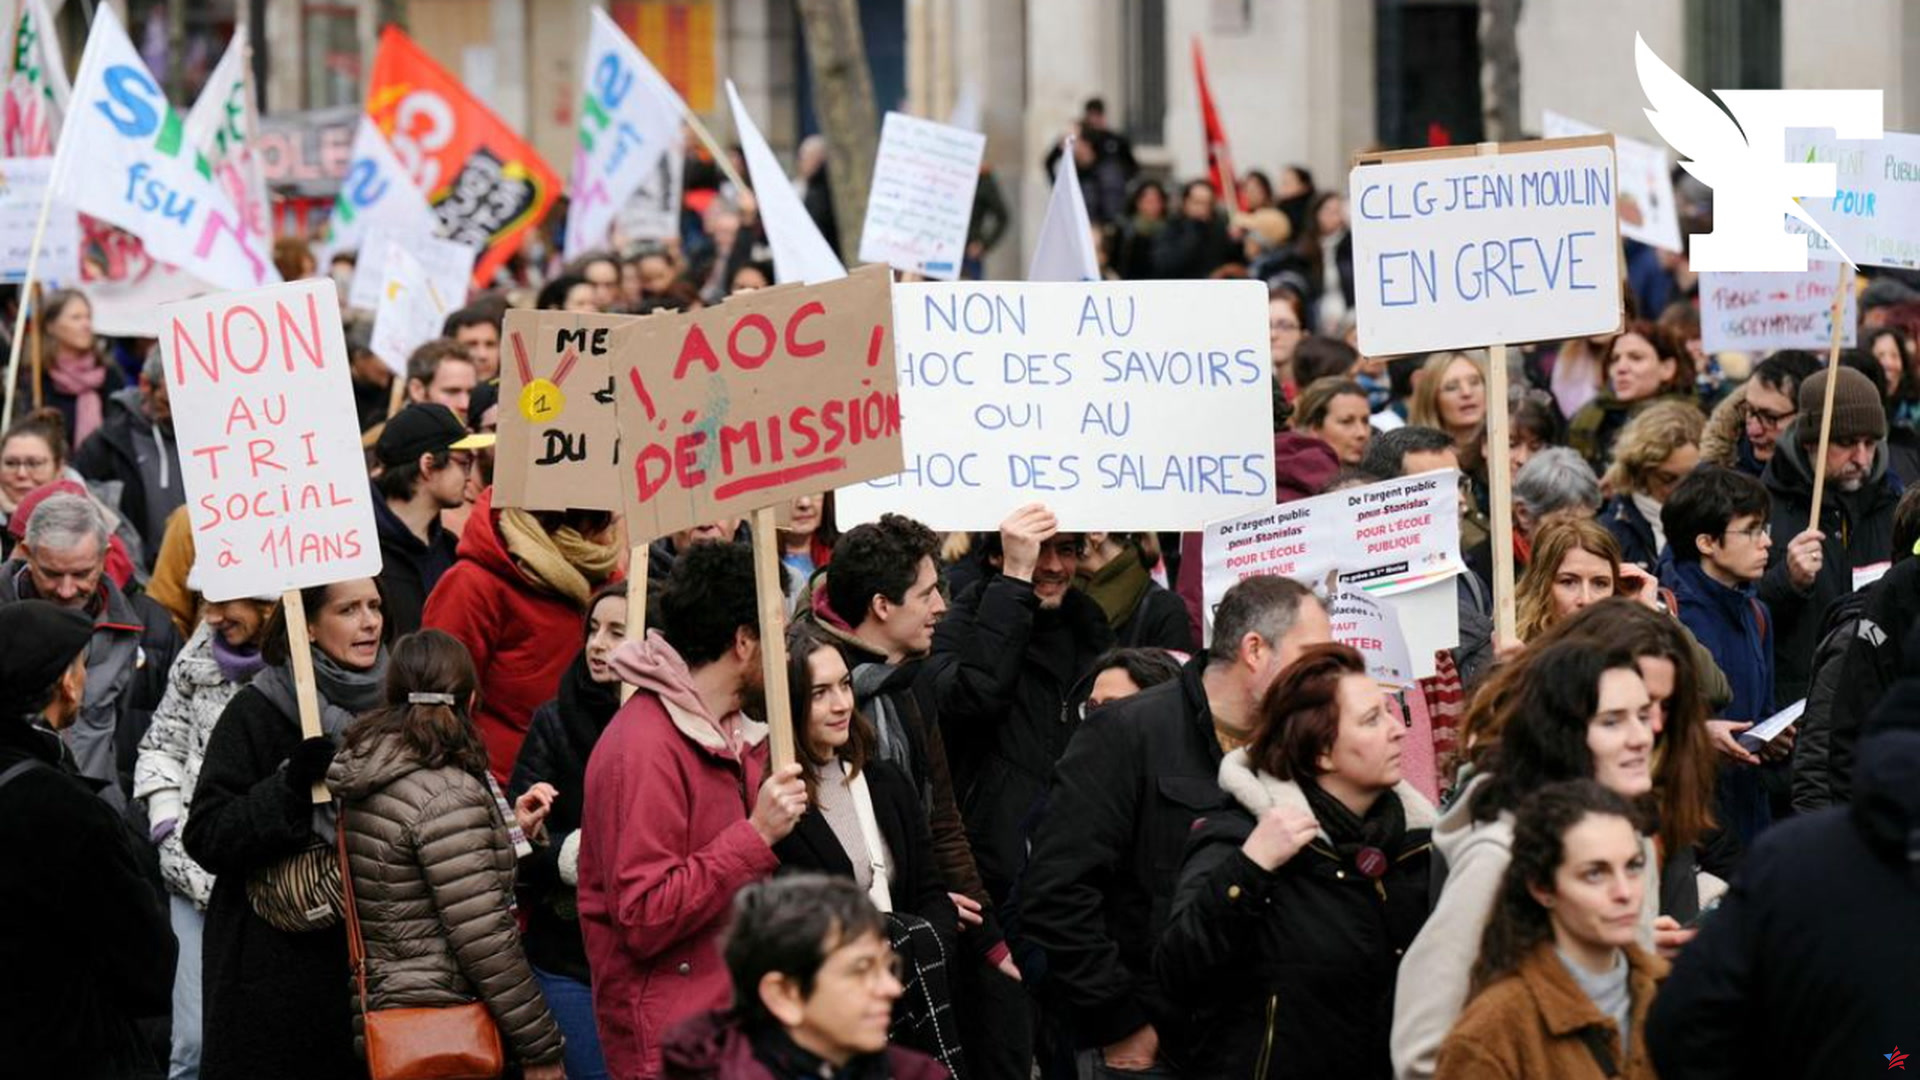 Tarea de estudiantes de secundaria: “El nuevo rector de París debe volver a la reforma Affelnet”